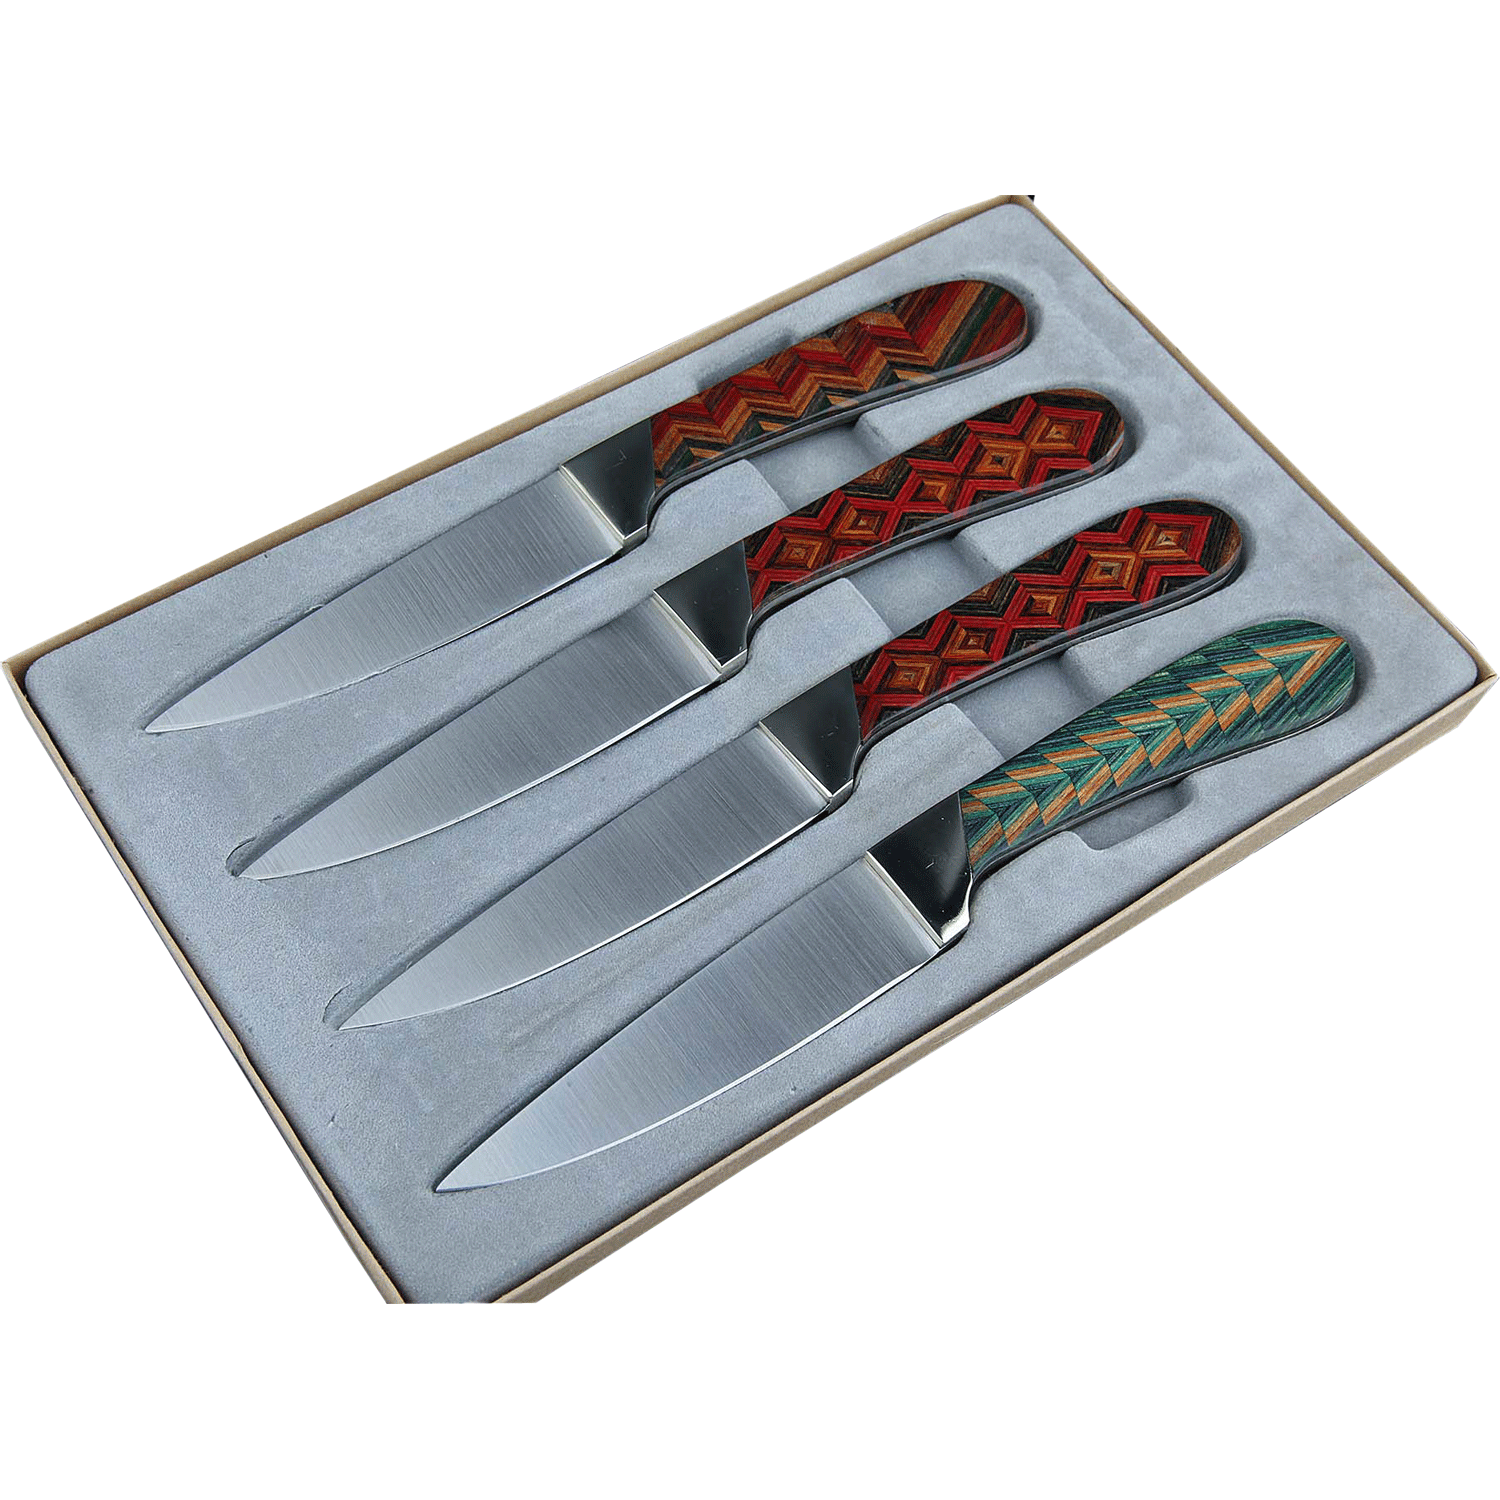 Эксклюзивный набор из 4-х ножей для стейка Santa Fe, сталь 440А, рукоять черное дерево/наборное дерево